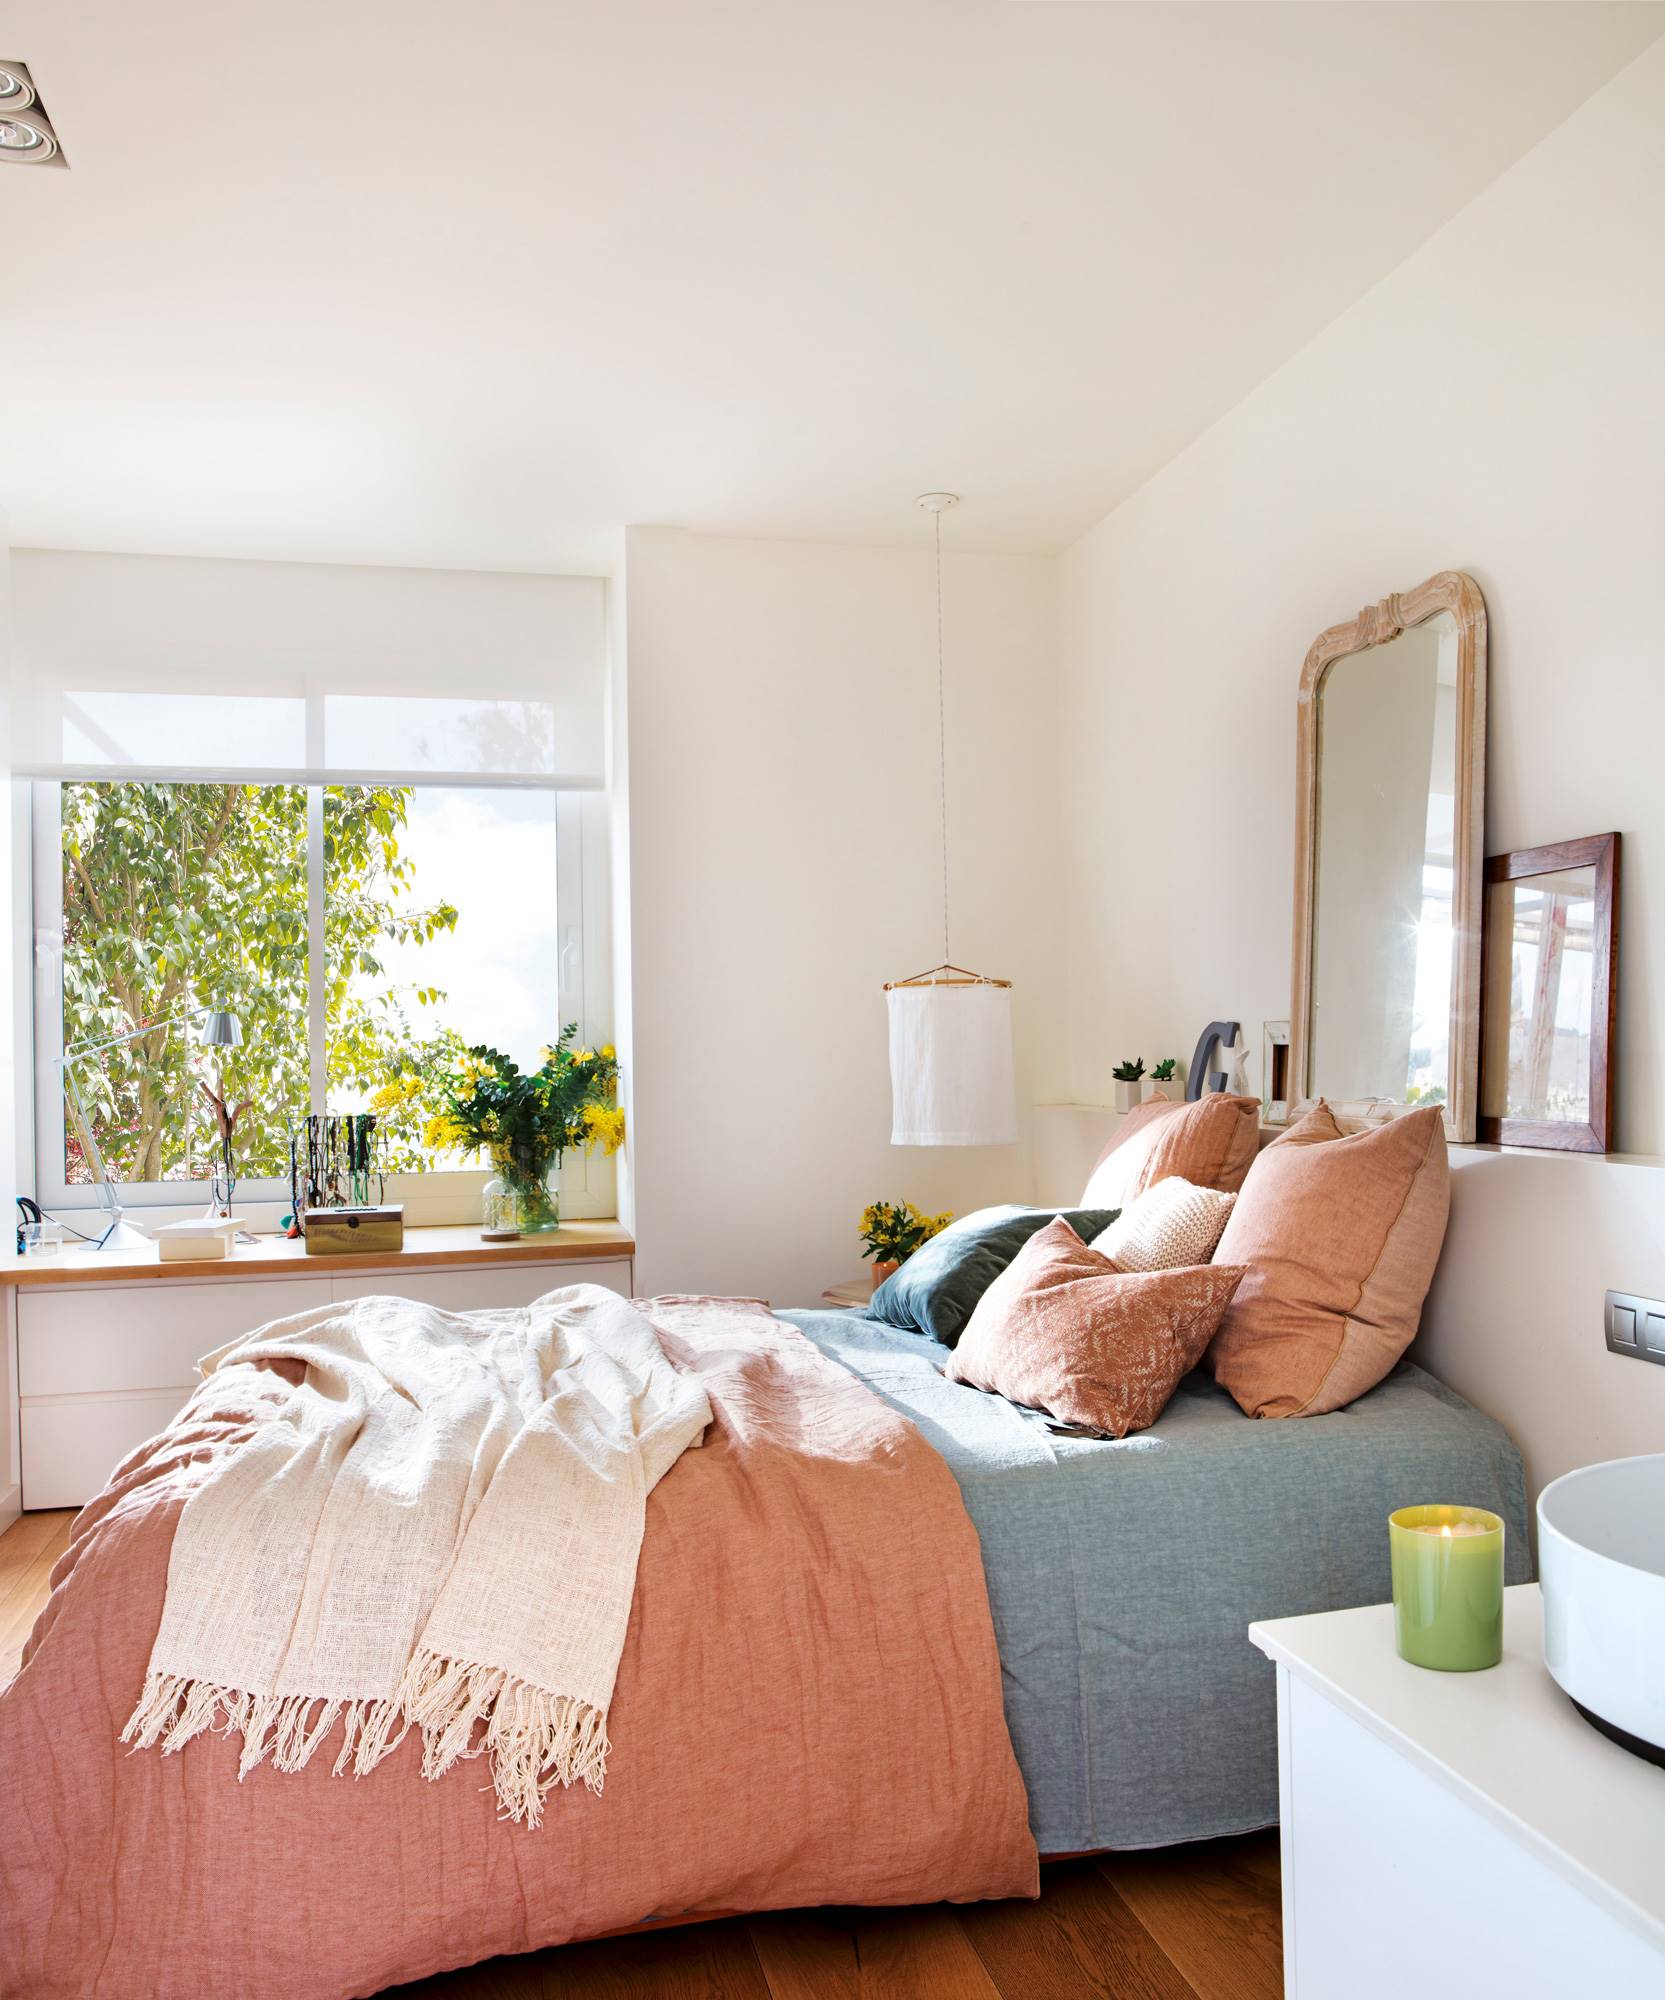 Dormitorio primaveral con colores empolvados y cómoda debajo de la ventana